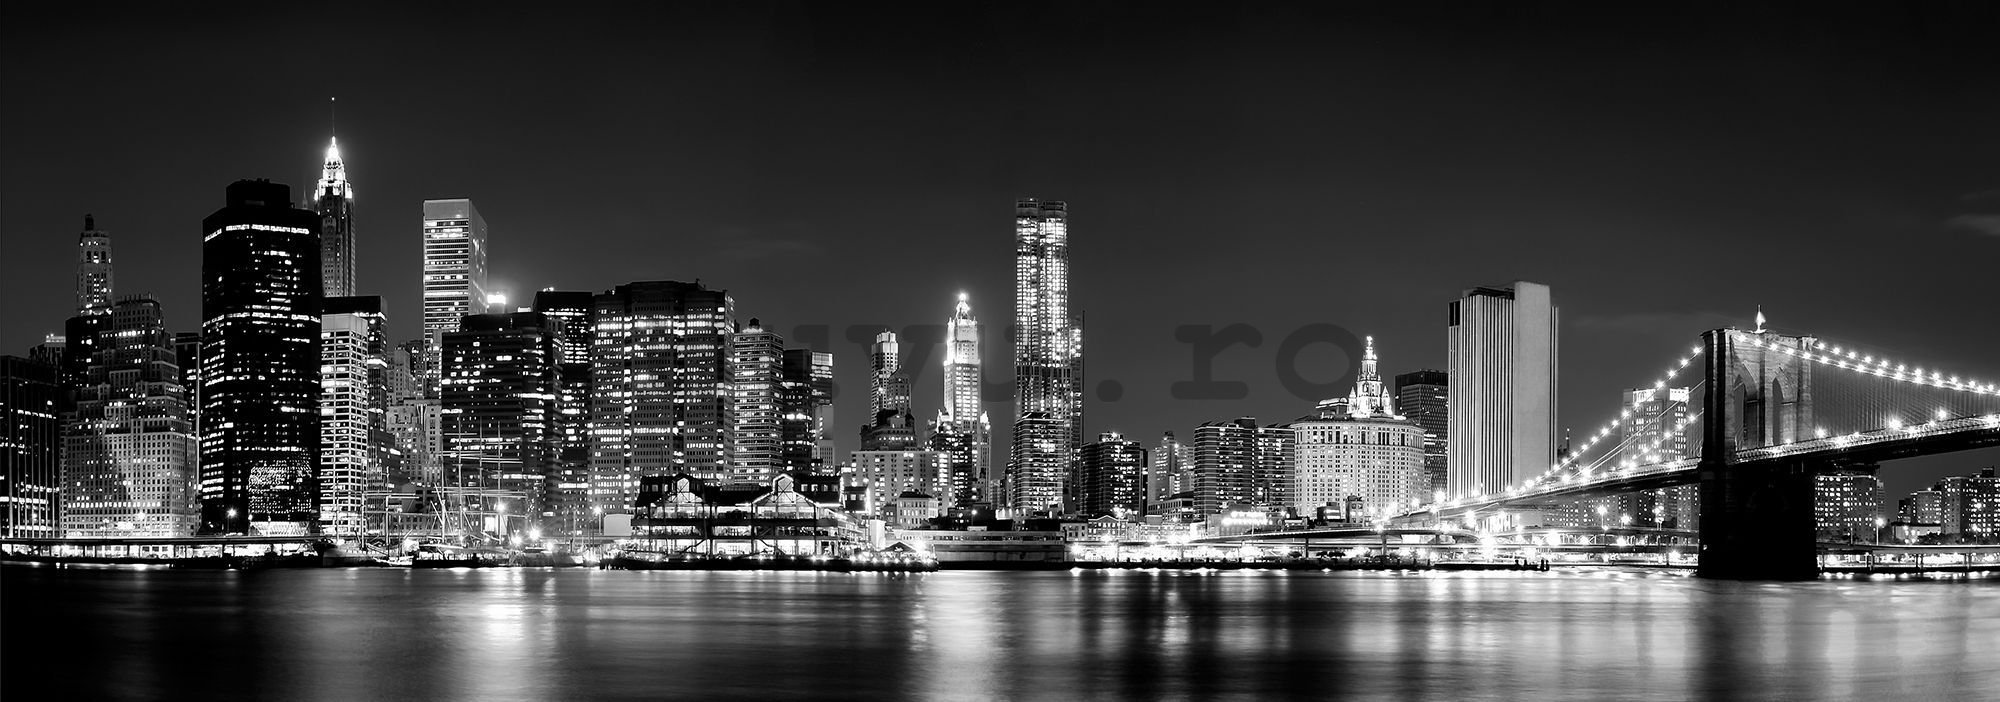 Fototapet: N.Y. noaptea (alb-negru) - 624x219 cm